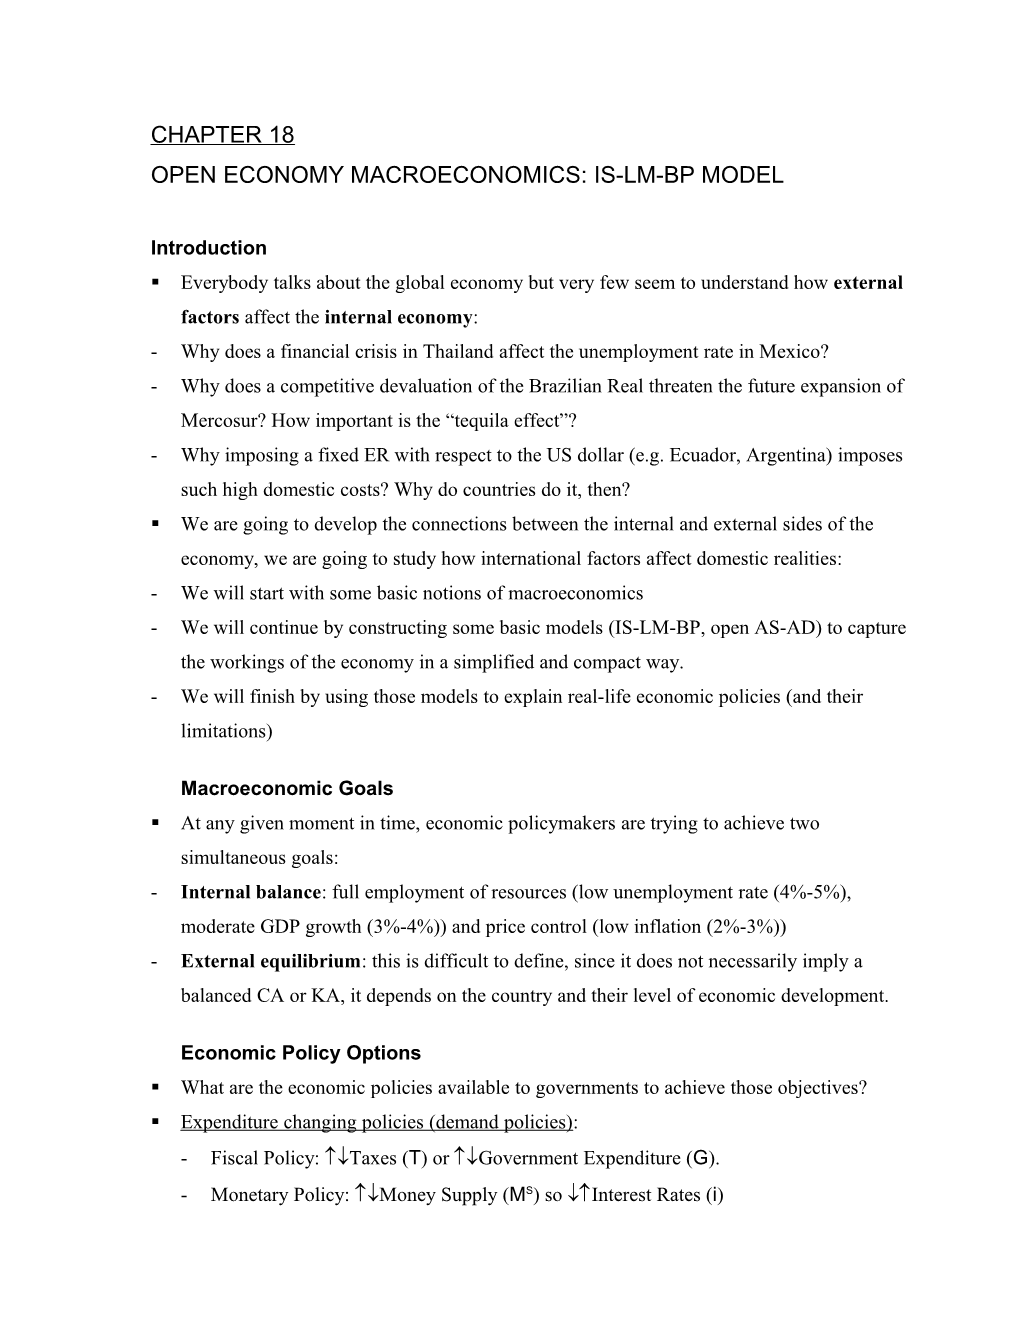 Open Economy Macroeconomics: Is-Lm-Bp Model